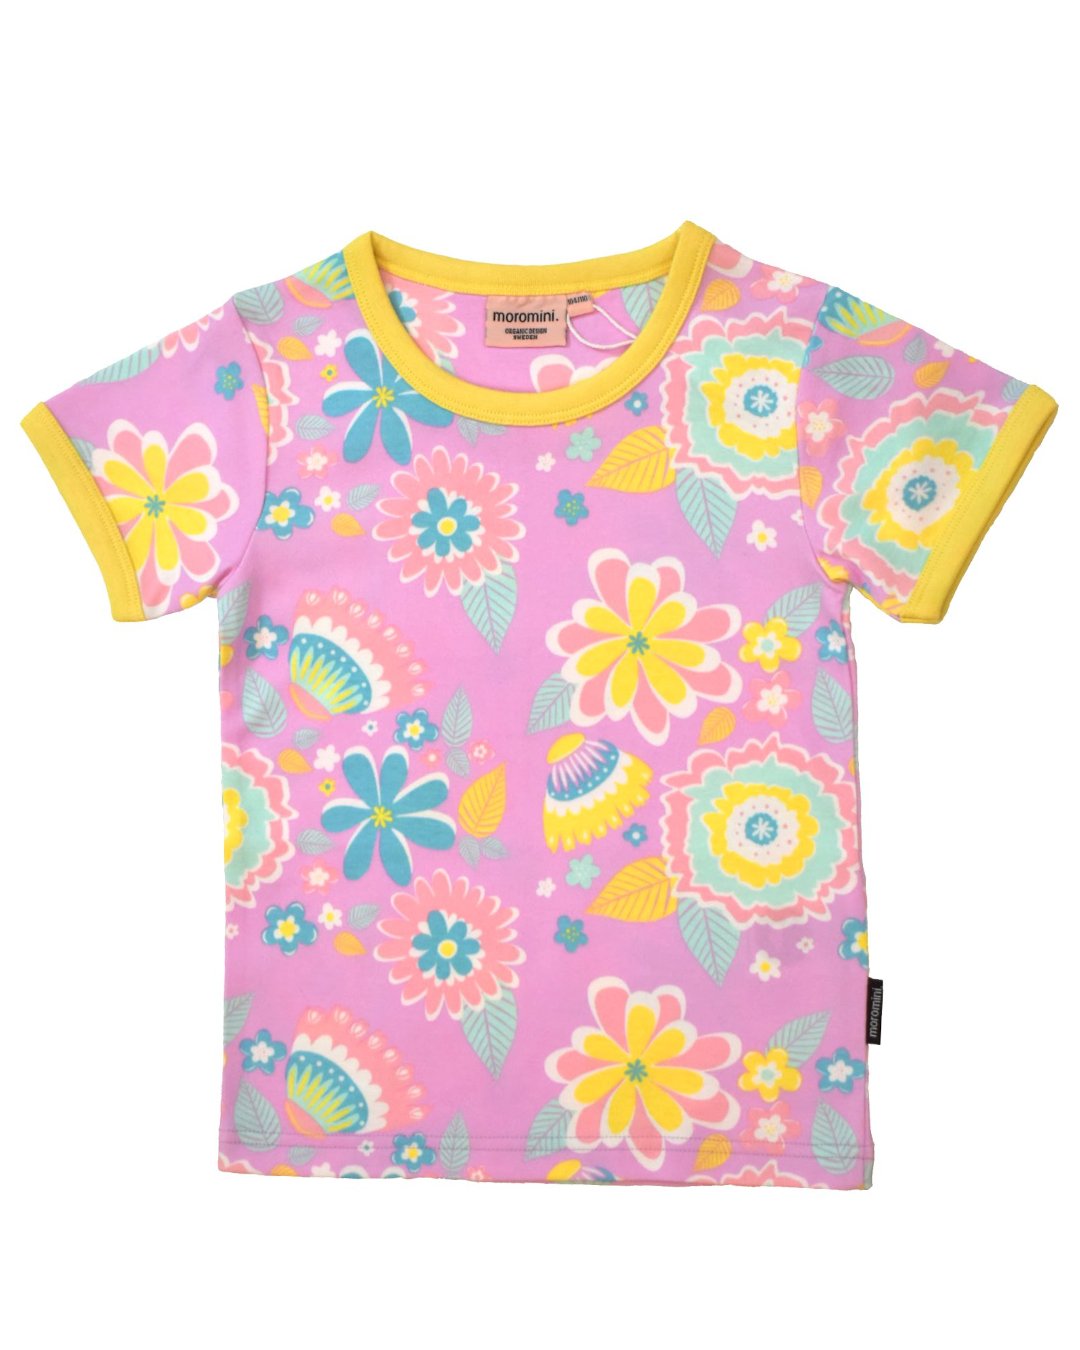 Rosa Pastell T-Shirt mit Blumen von moromini aus Biobaumwoll